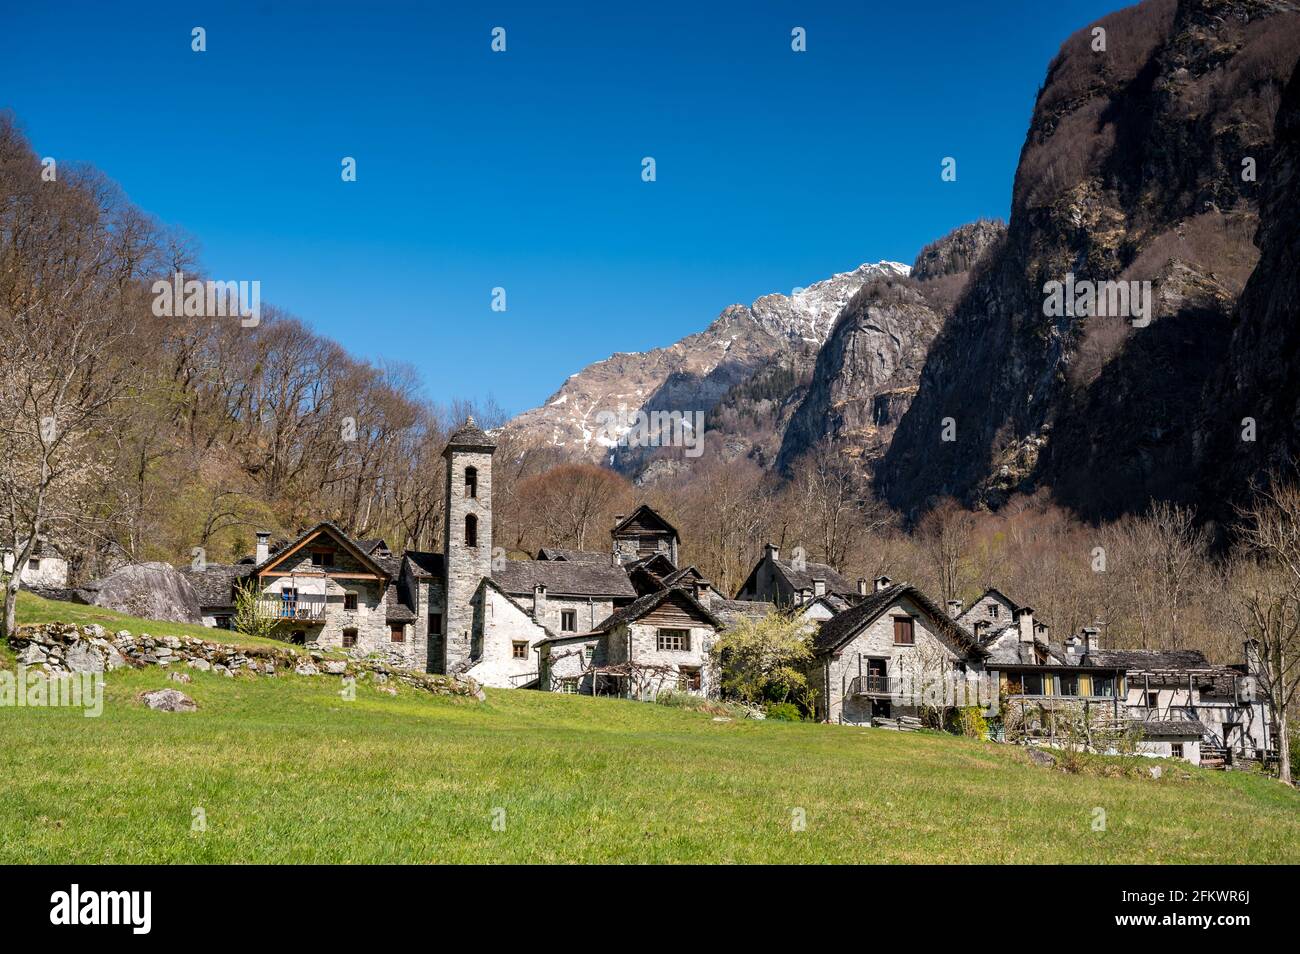 the typical ticino stone village of Foroglio Stock Photo